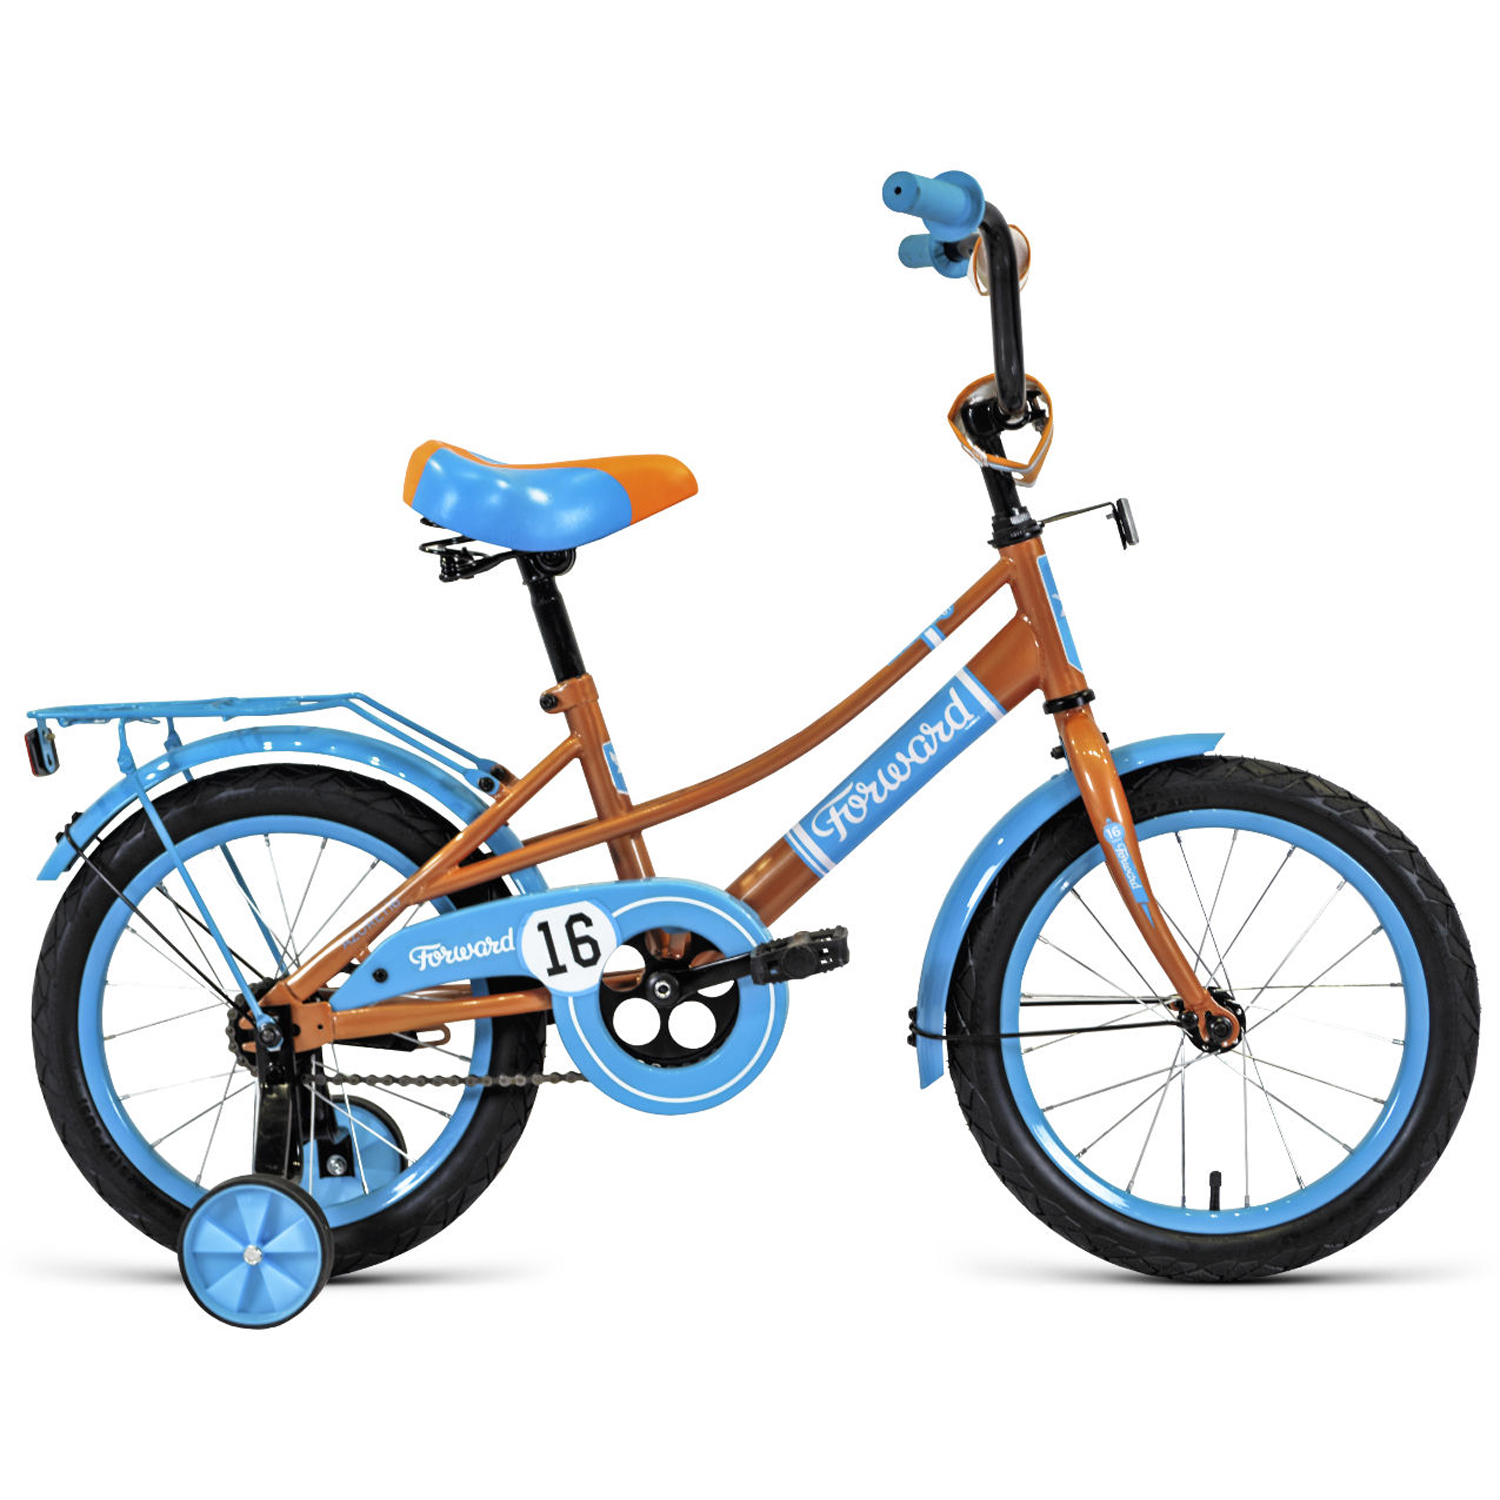 Двухколесный велосипед Forward Azure 16 2021, бежевый/голубой двухколесный велосипед forward azure 16 2021 коралловый голубой